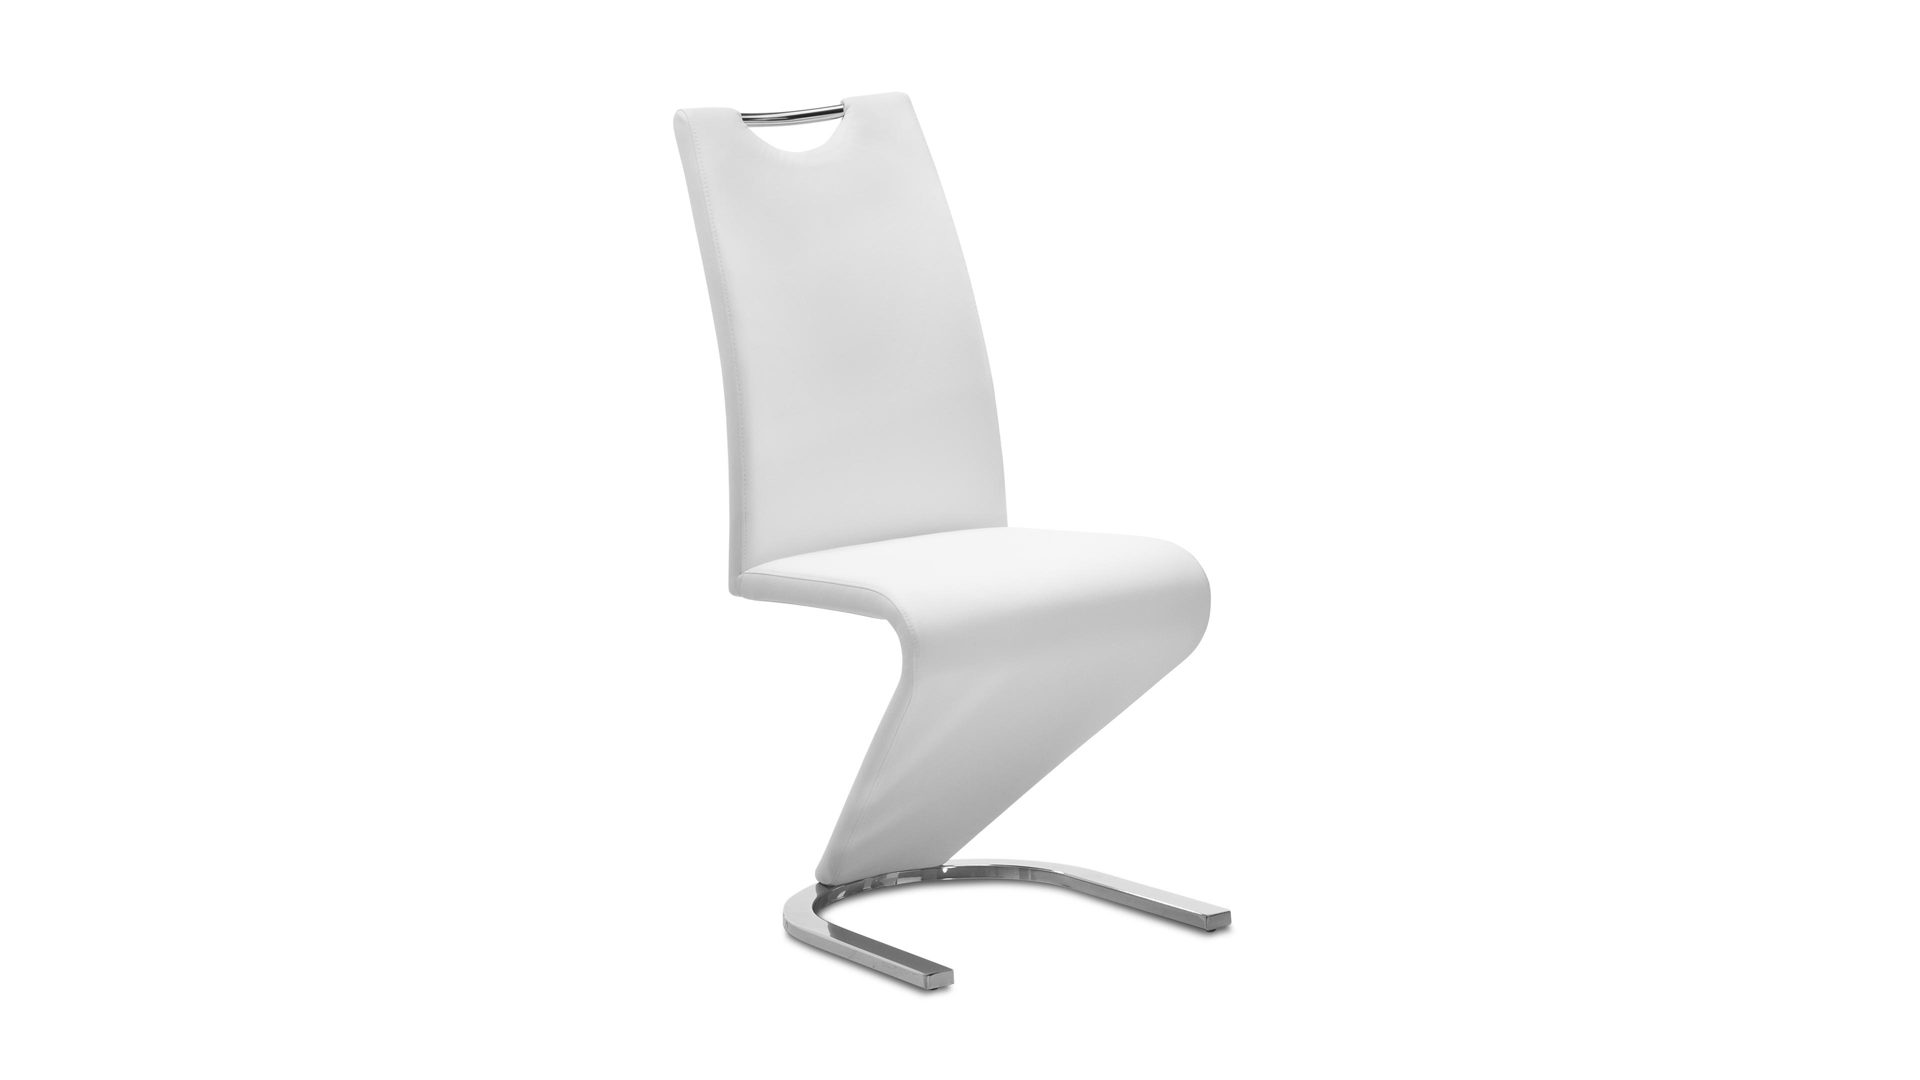 Schwingstuhl Mca furniture aus Kunstleder Metall in Weiß Schwingstuhl als Wohnzimmermöbel oder Esszimmermöbel weißes Kunstleder CPW & Chrom